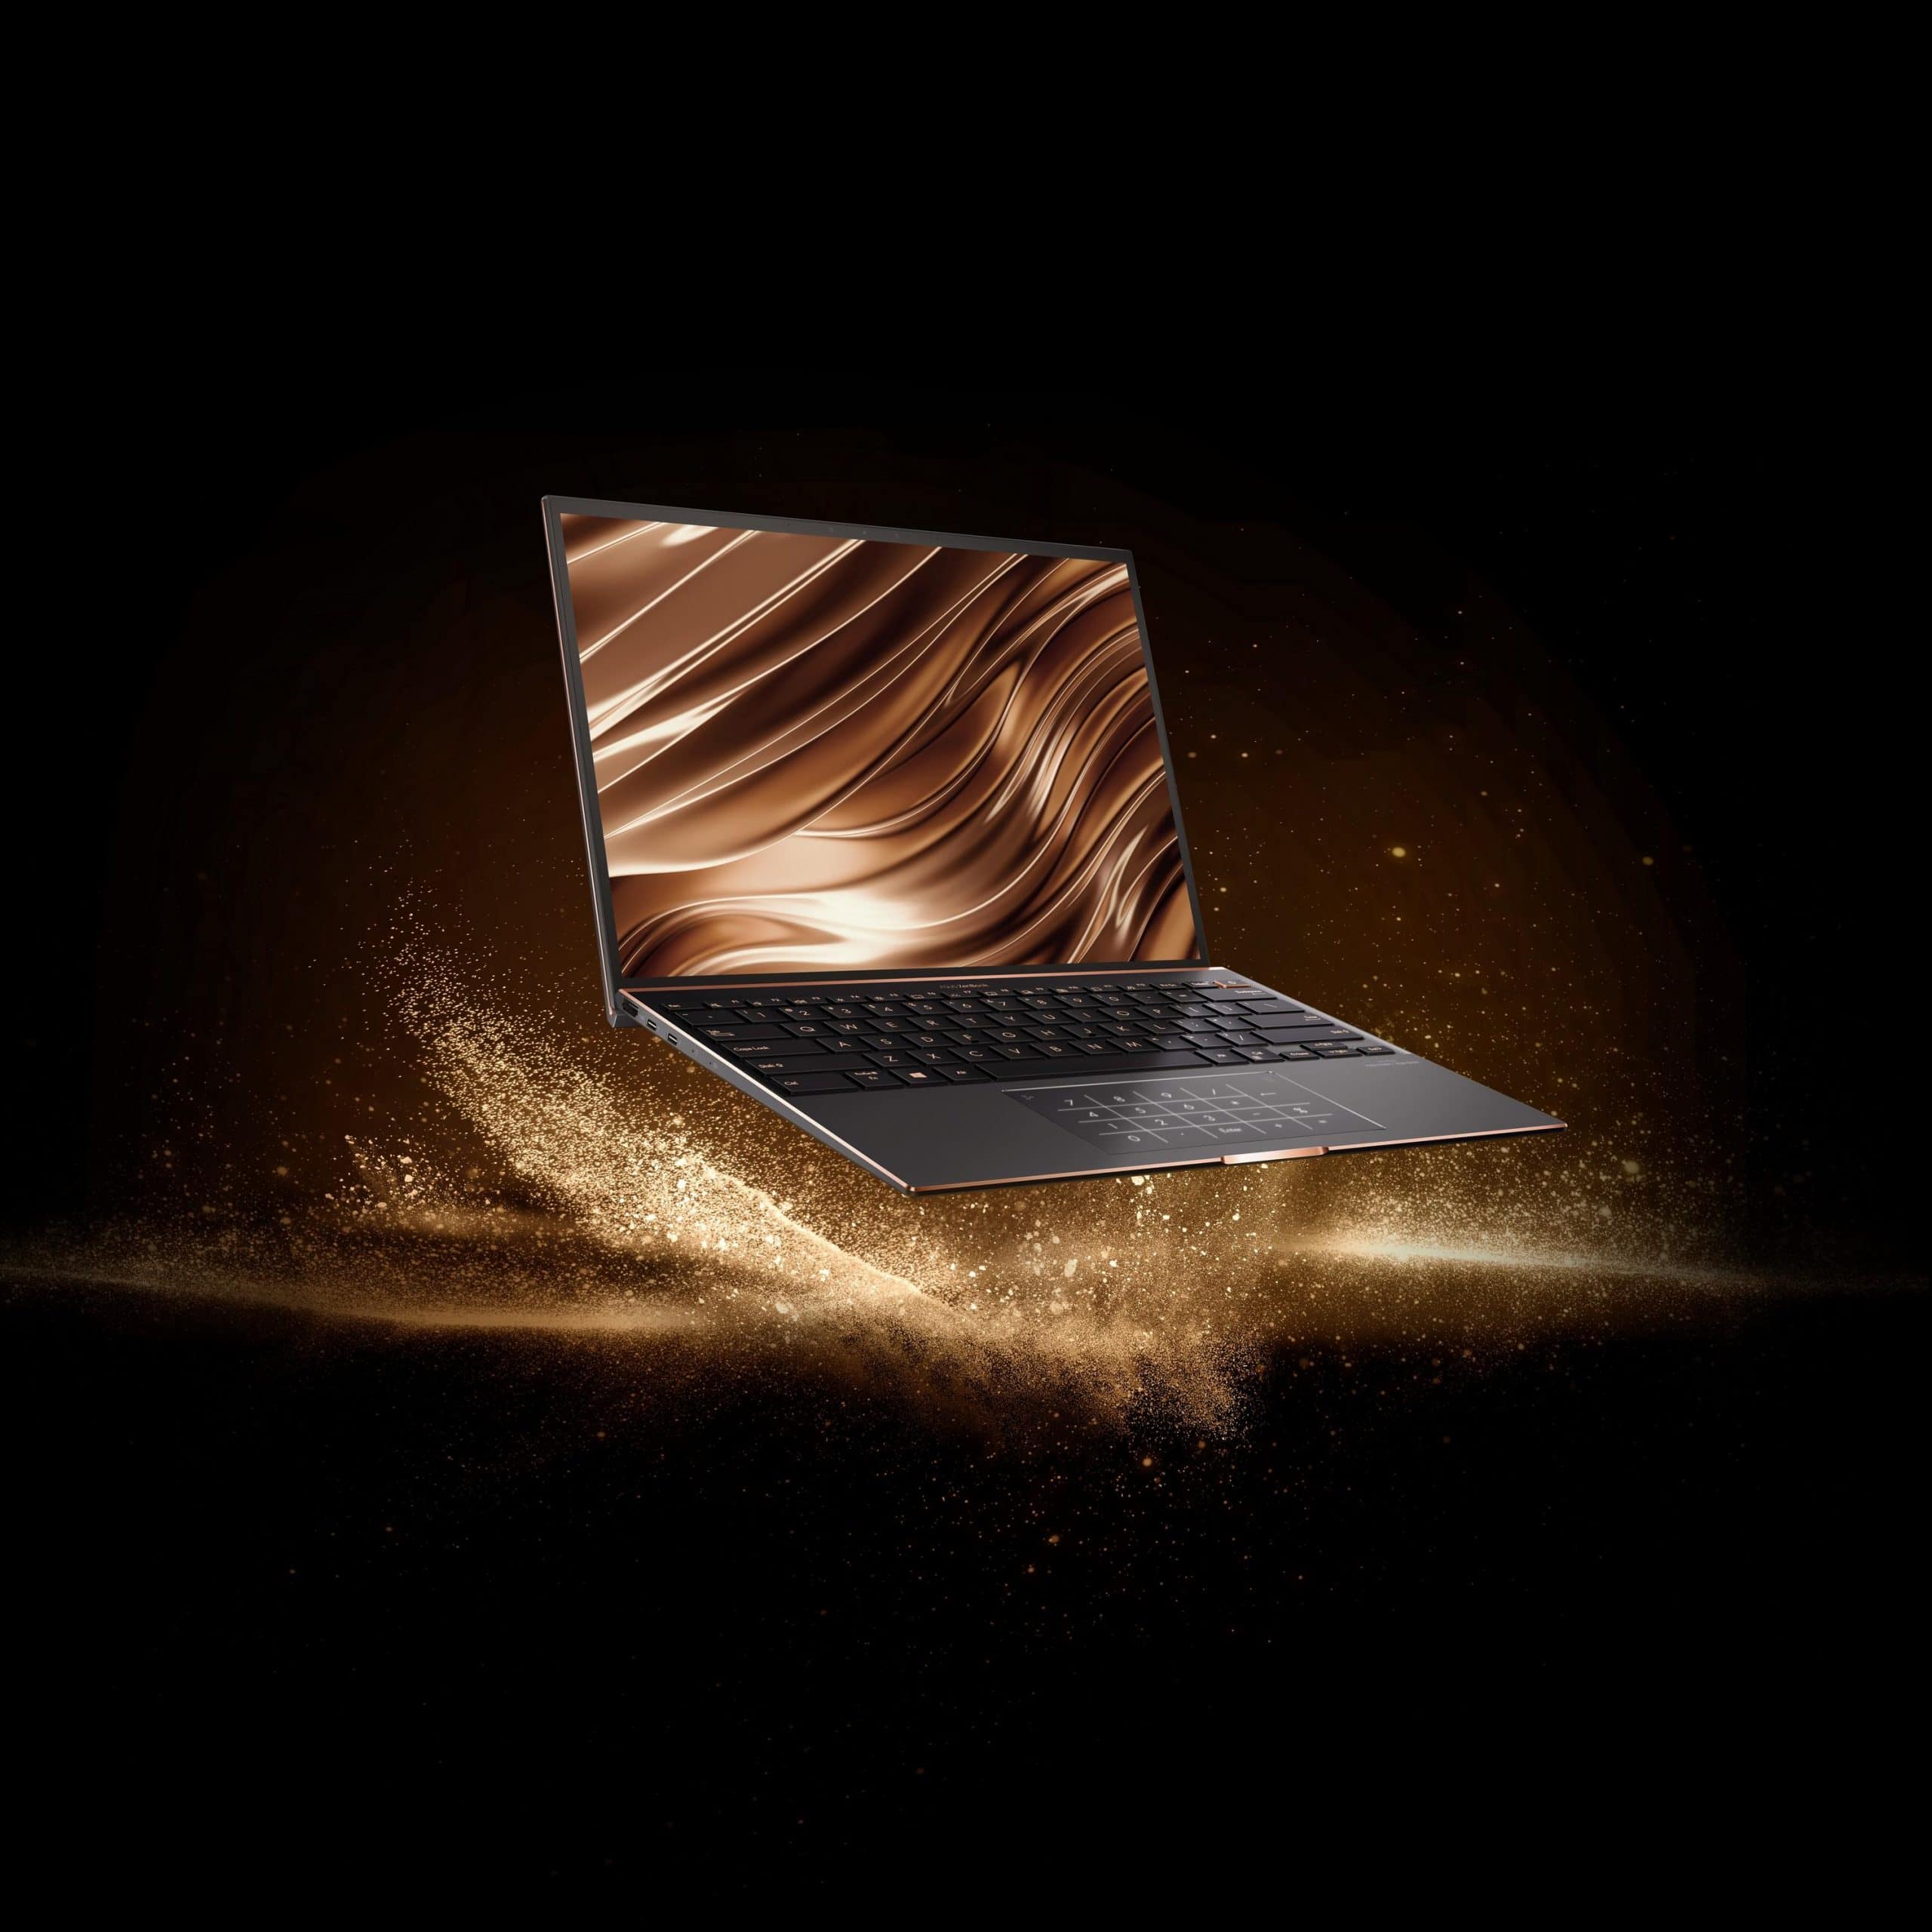 ASUS giới thiệu loạt sản phẩm laptop trang bị vi xử lí Intel Core thế hệ 11, đạt chuẩn Intel Evo